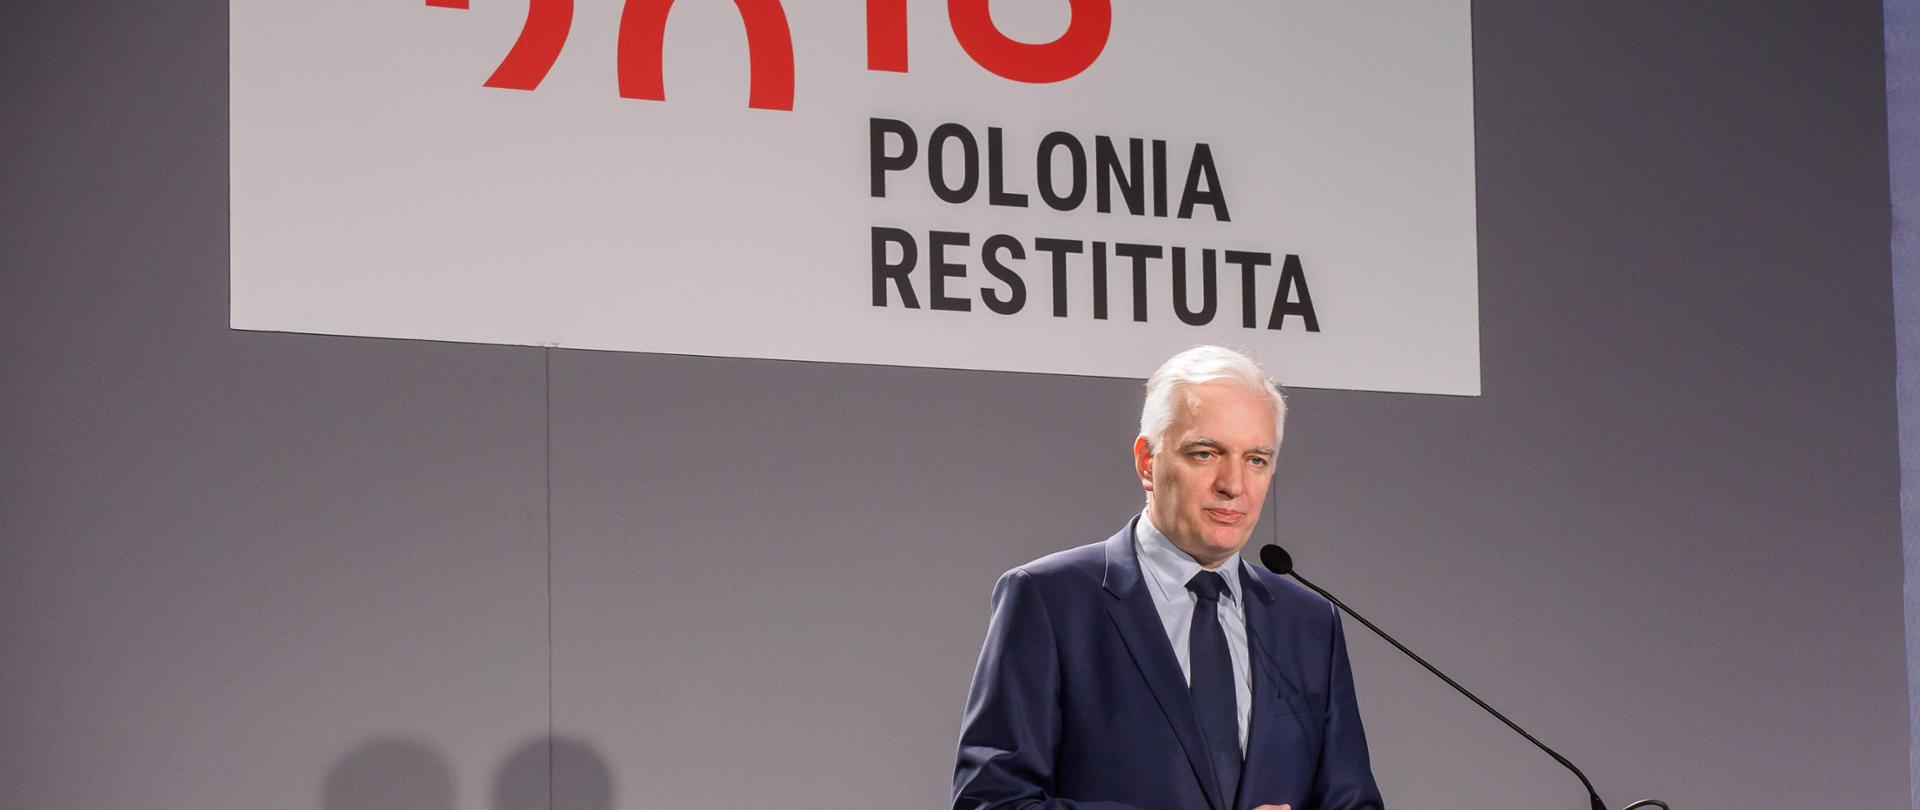 Na zdjęciu widać wicepremiera Jarosława Gowina przemawiającego na scenie podczas konferencji Polonia Restituta.